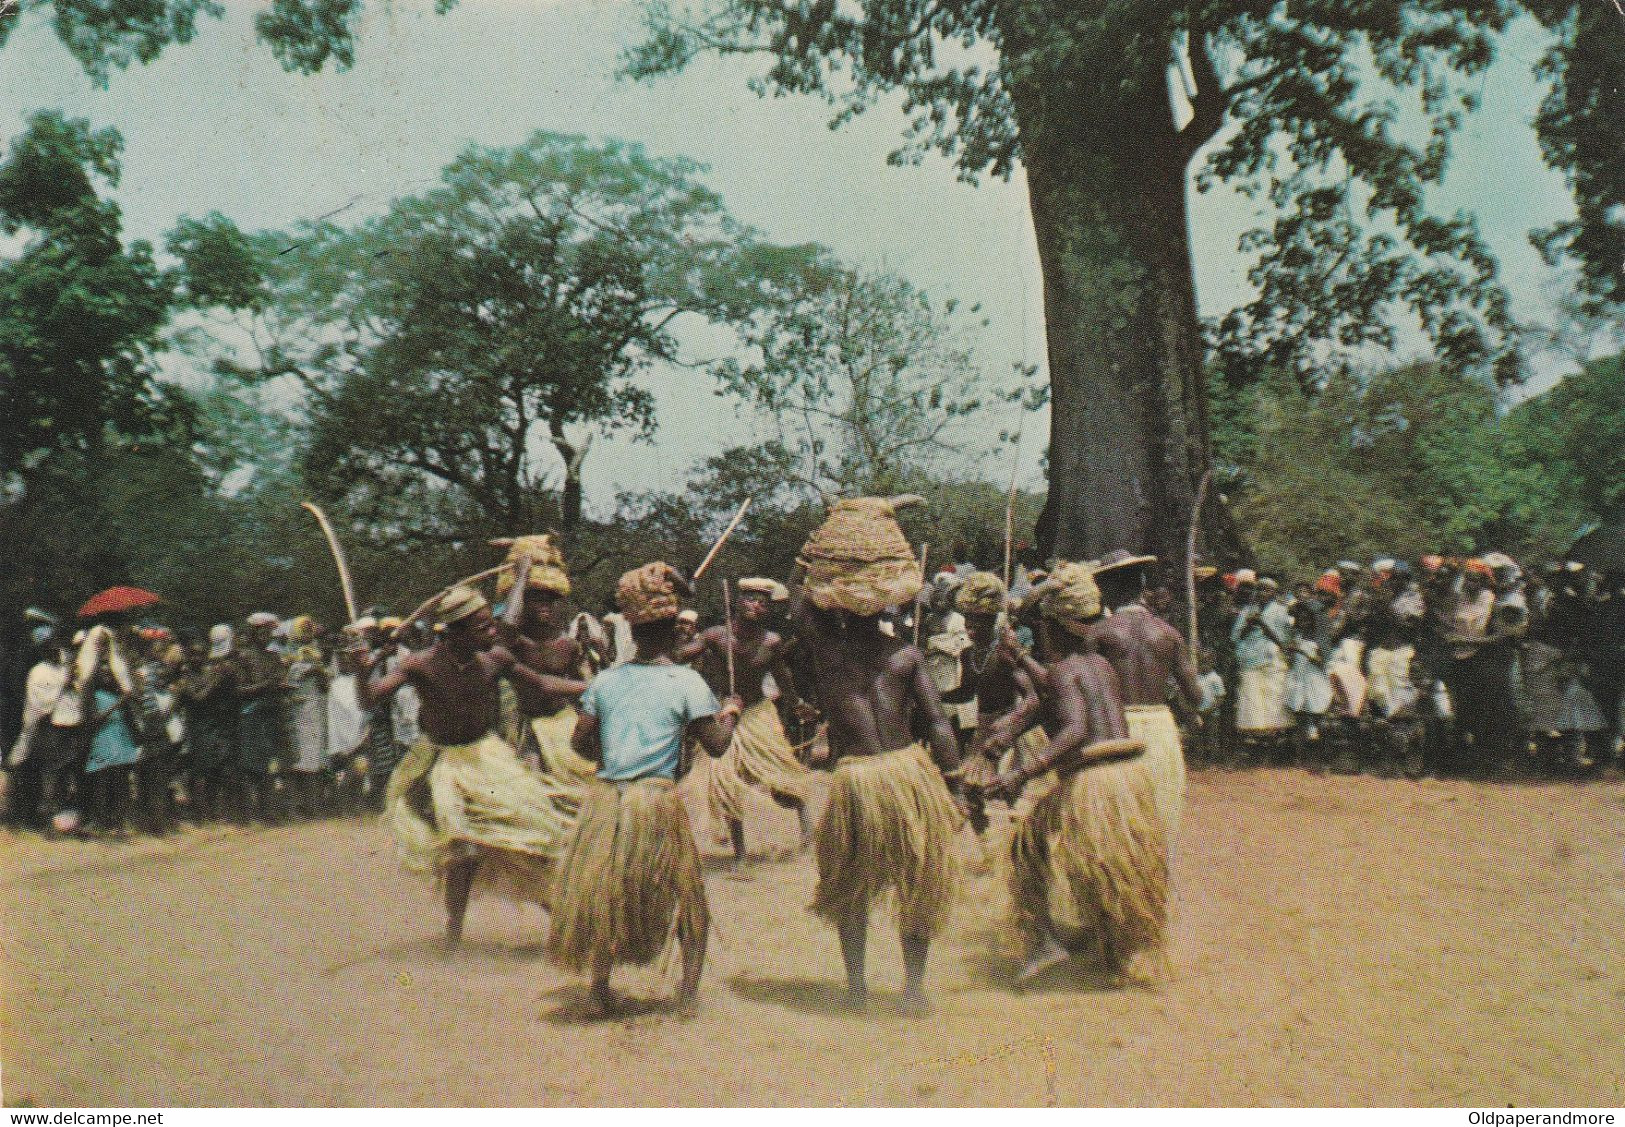 POSTCARD AFRICA - GUINEA - GUINÉ - OLD PORTUGUESE COLONY - DANÇA DO PAU DOS  BALANTAS    - ETHNIC - Guinée